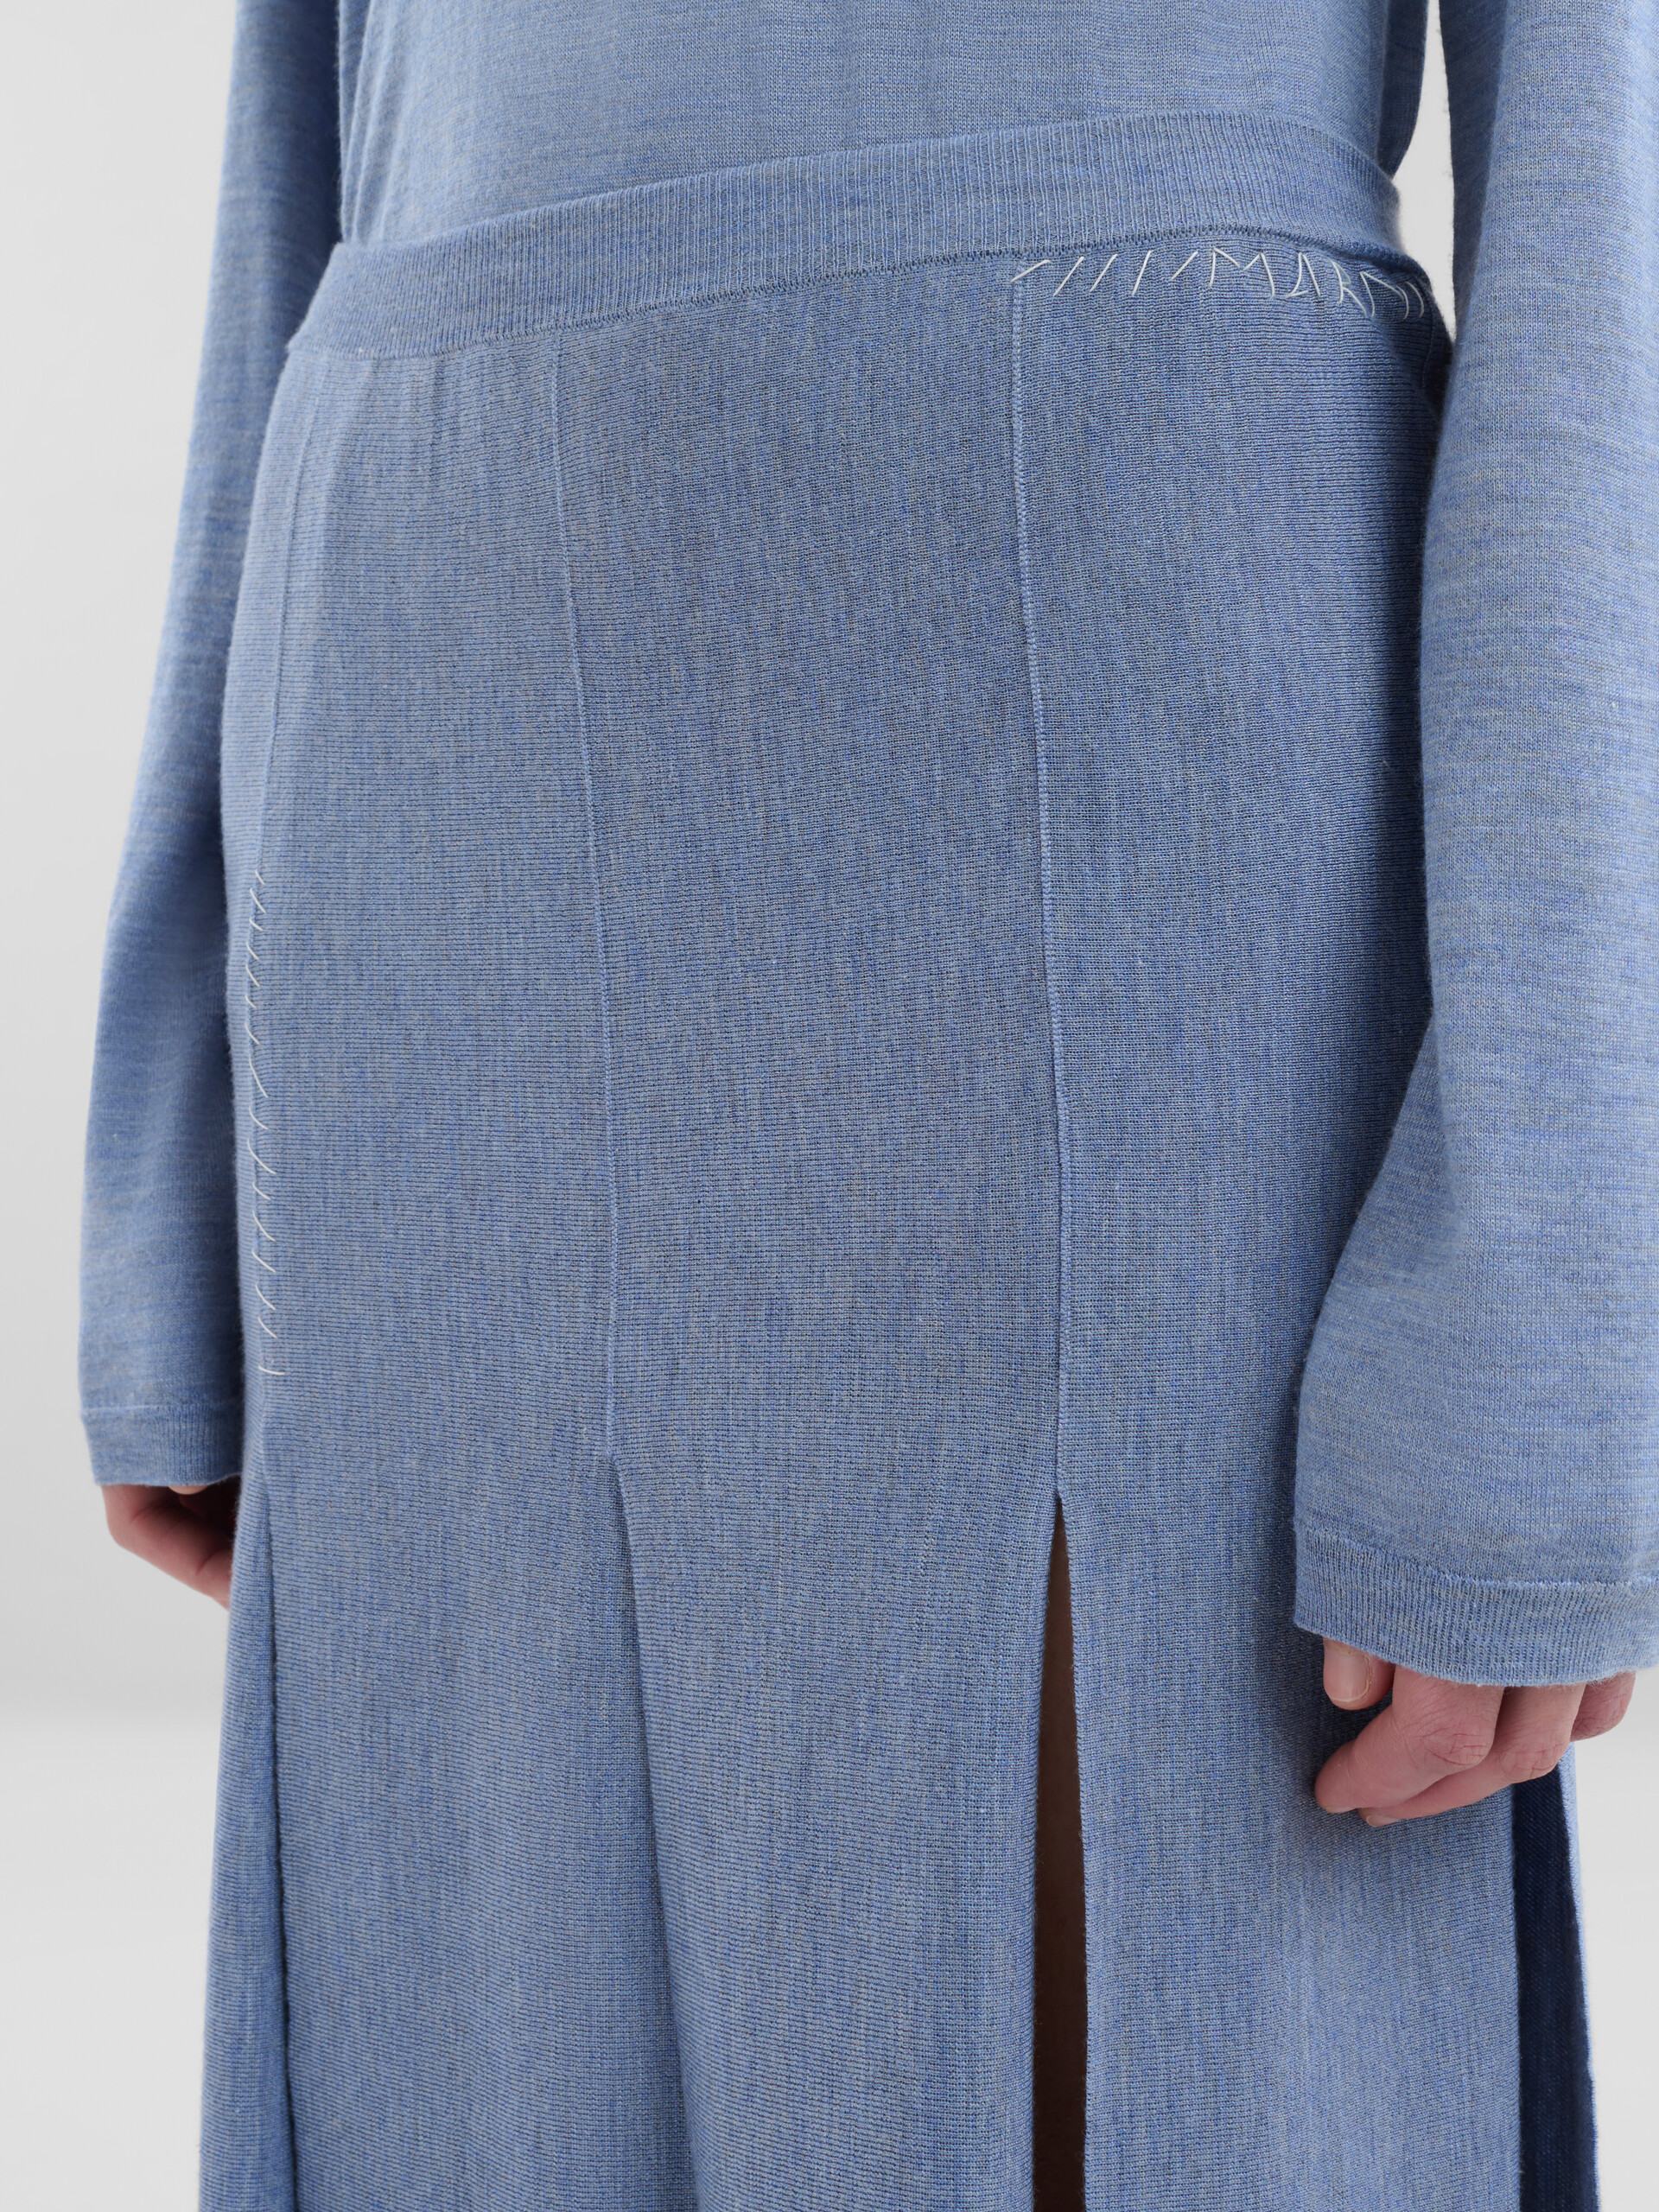 Falda azul de lana y seda con aberturas sin rematar - Faldas - Image 4